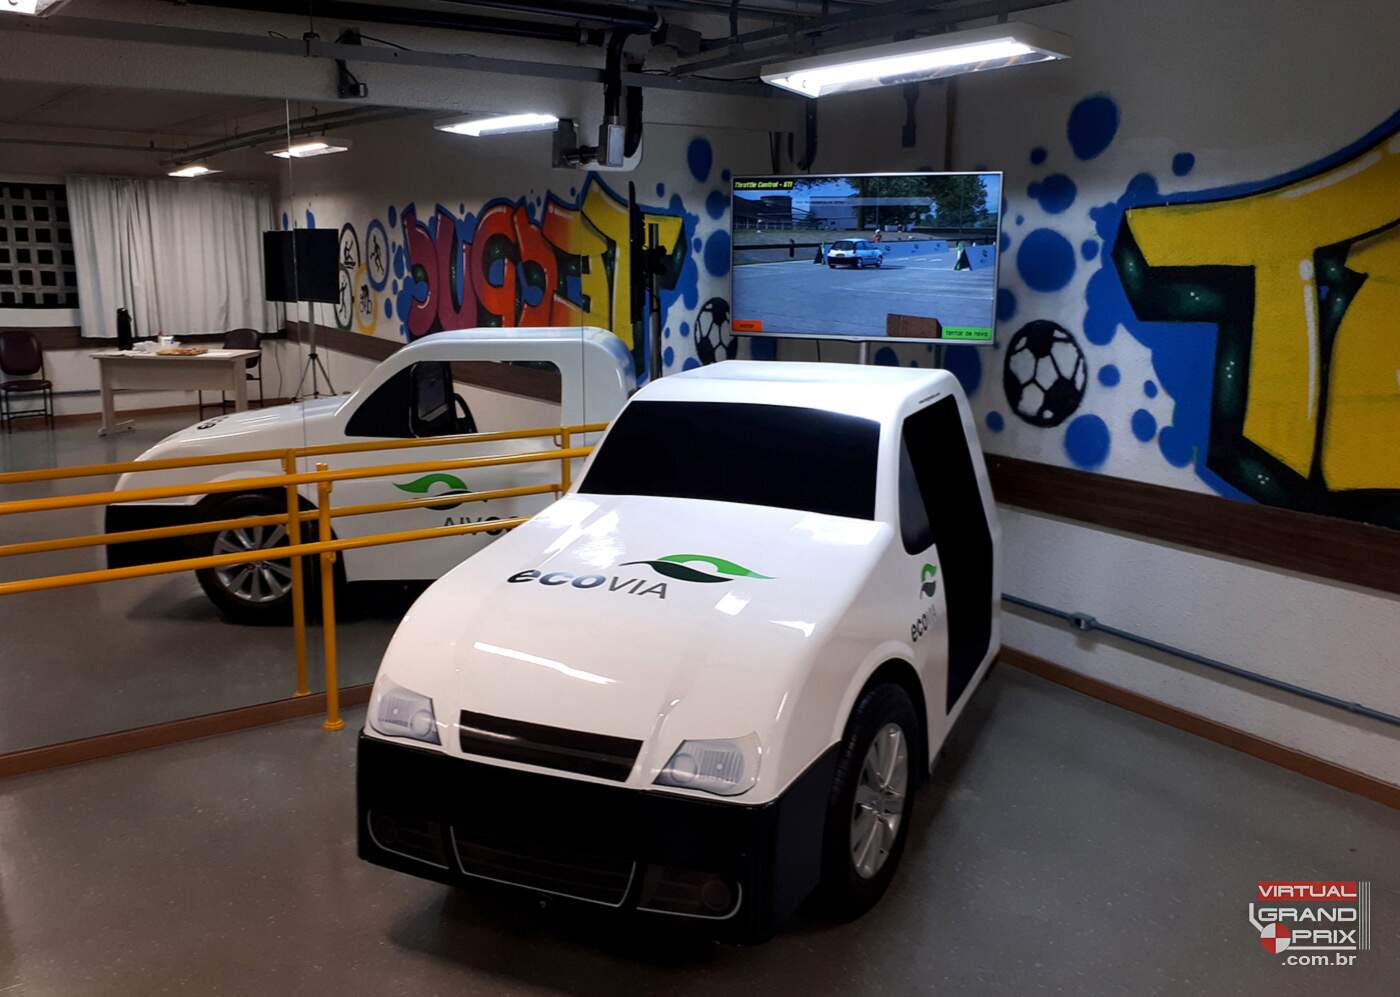 Simulador Real Car EcoVia @ Maio Amarelo 2019